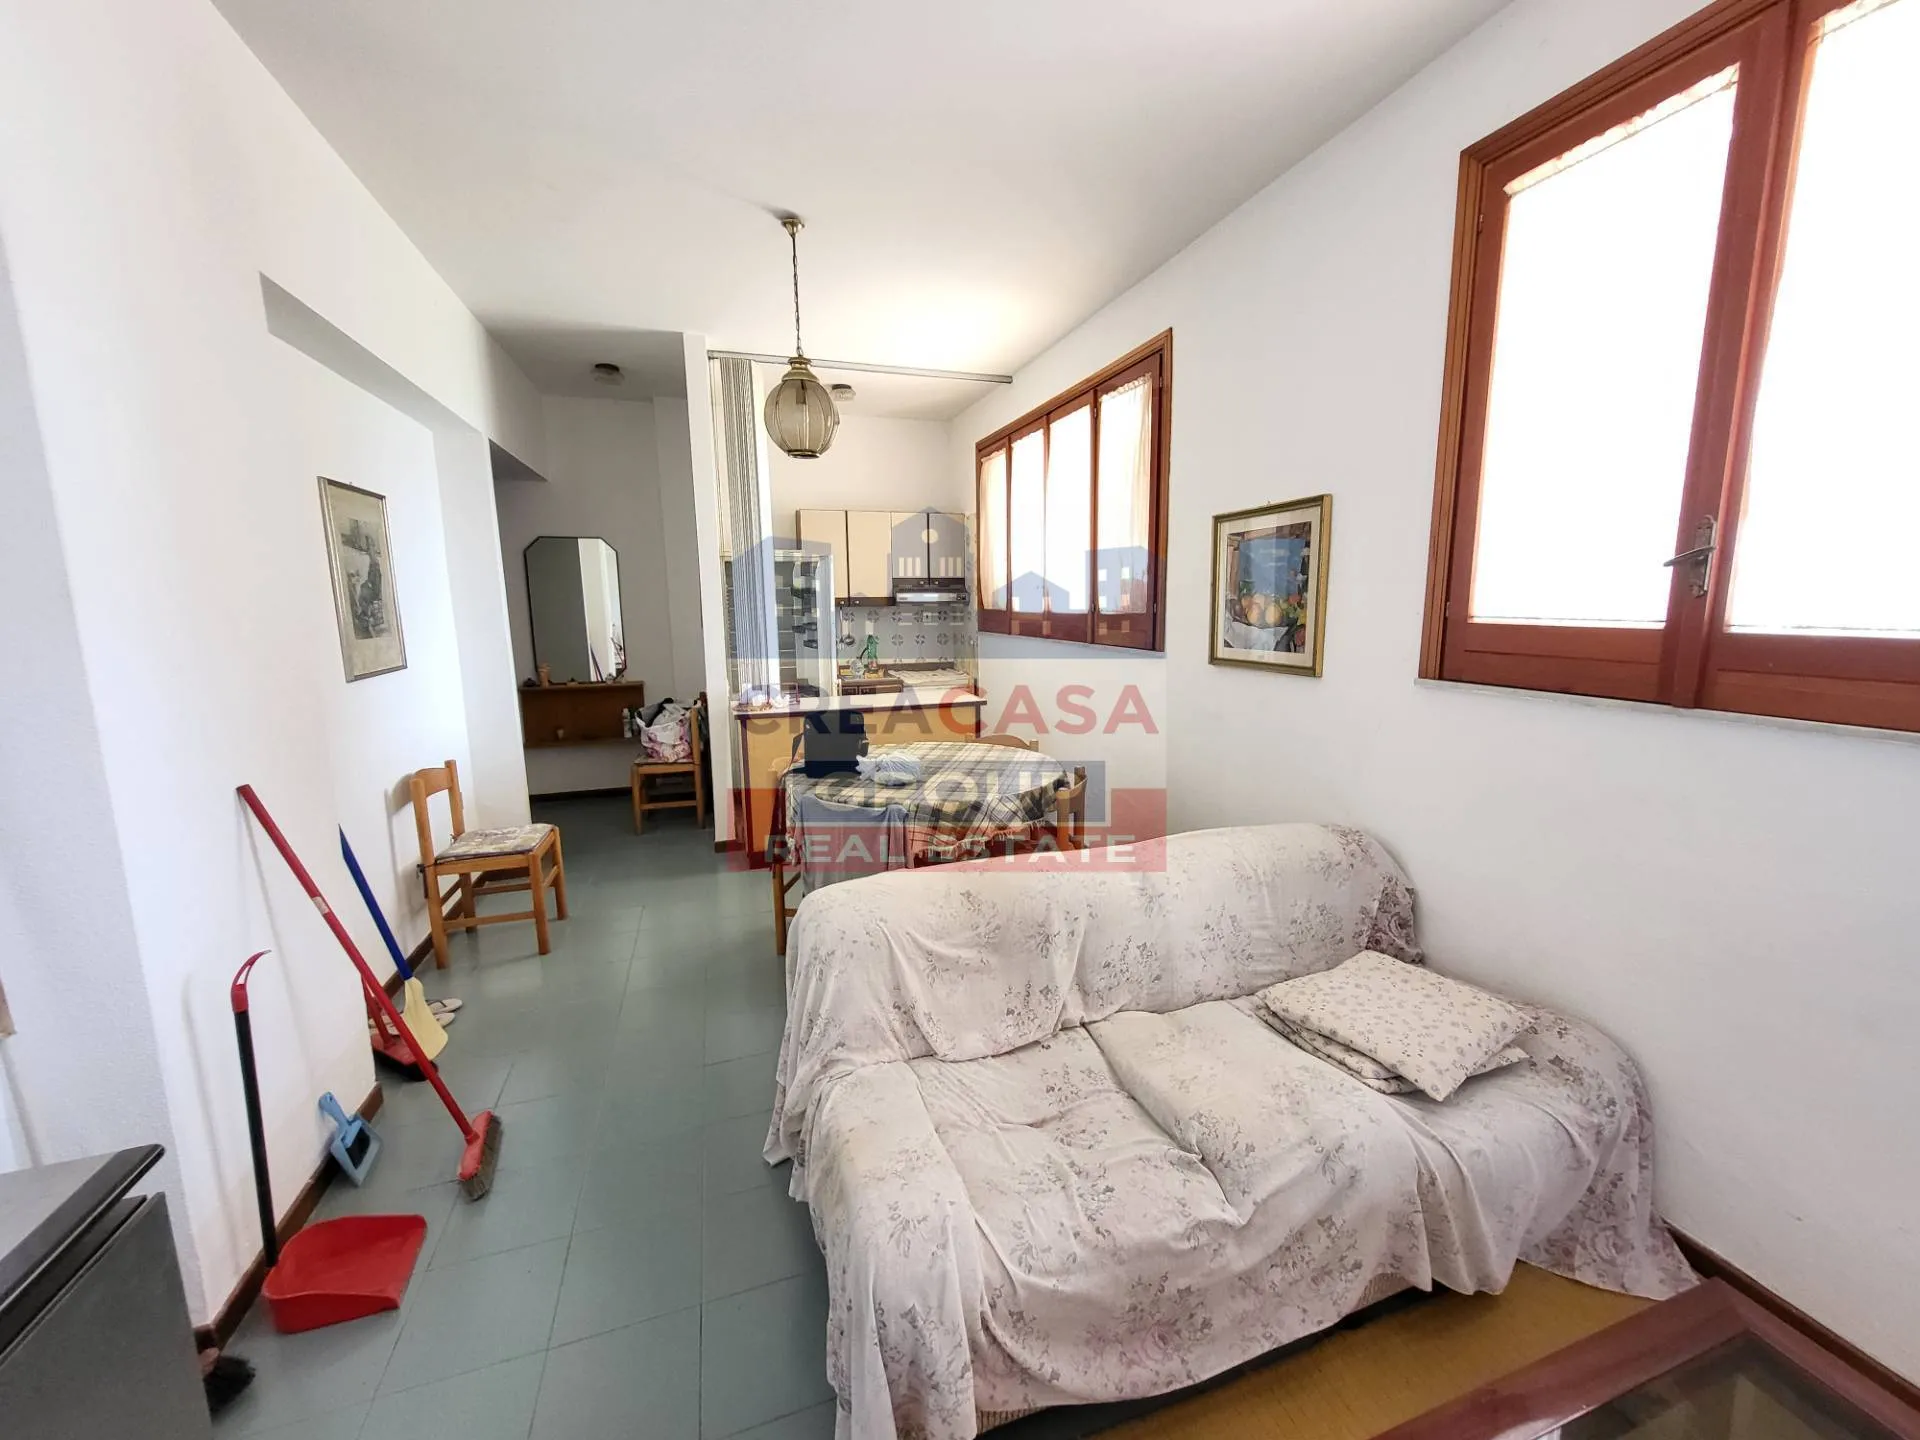 Immagine per Appartamento in vendita a Letojanni contrada sillemi